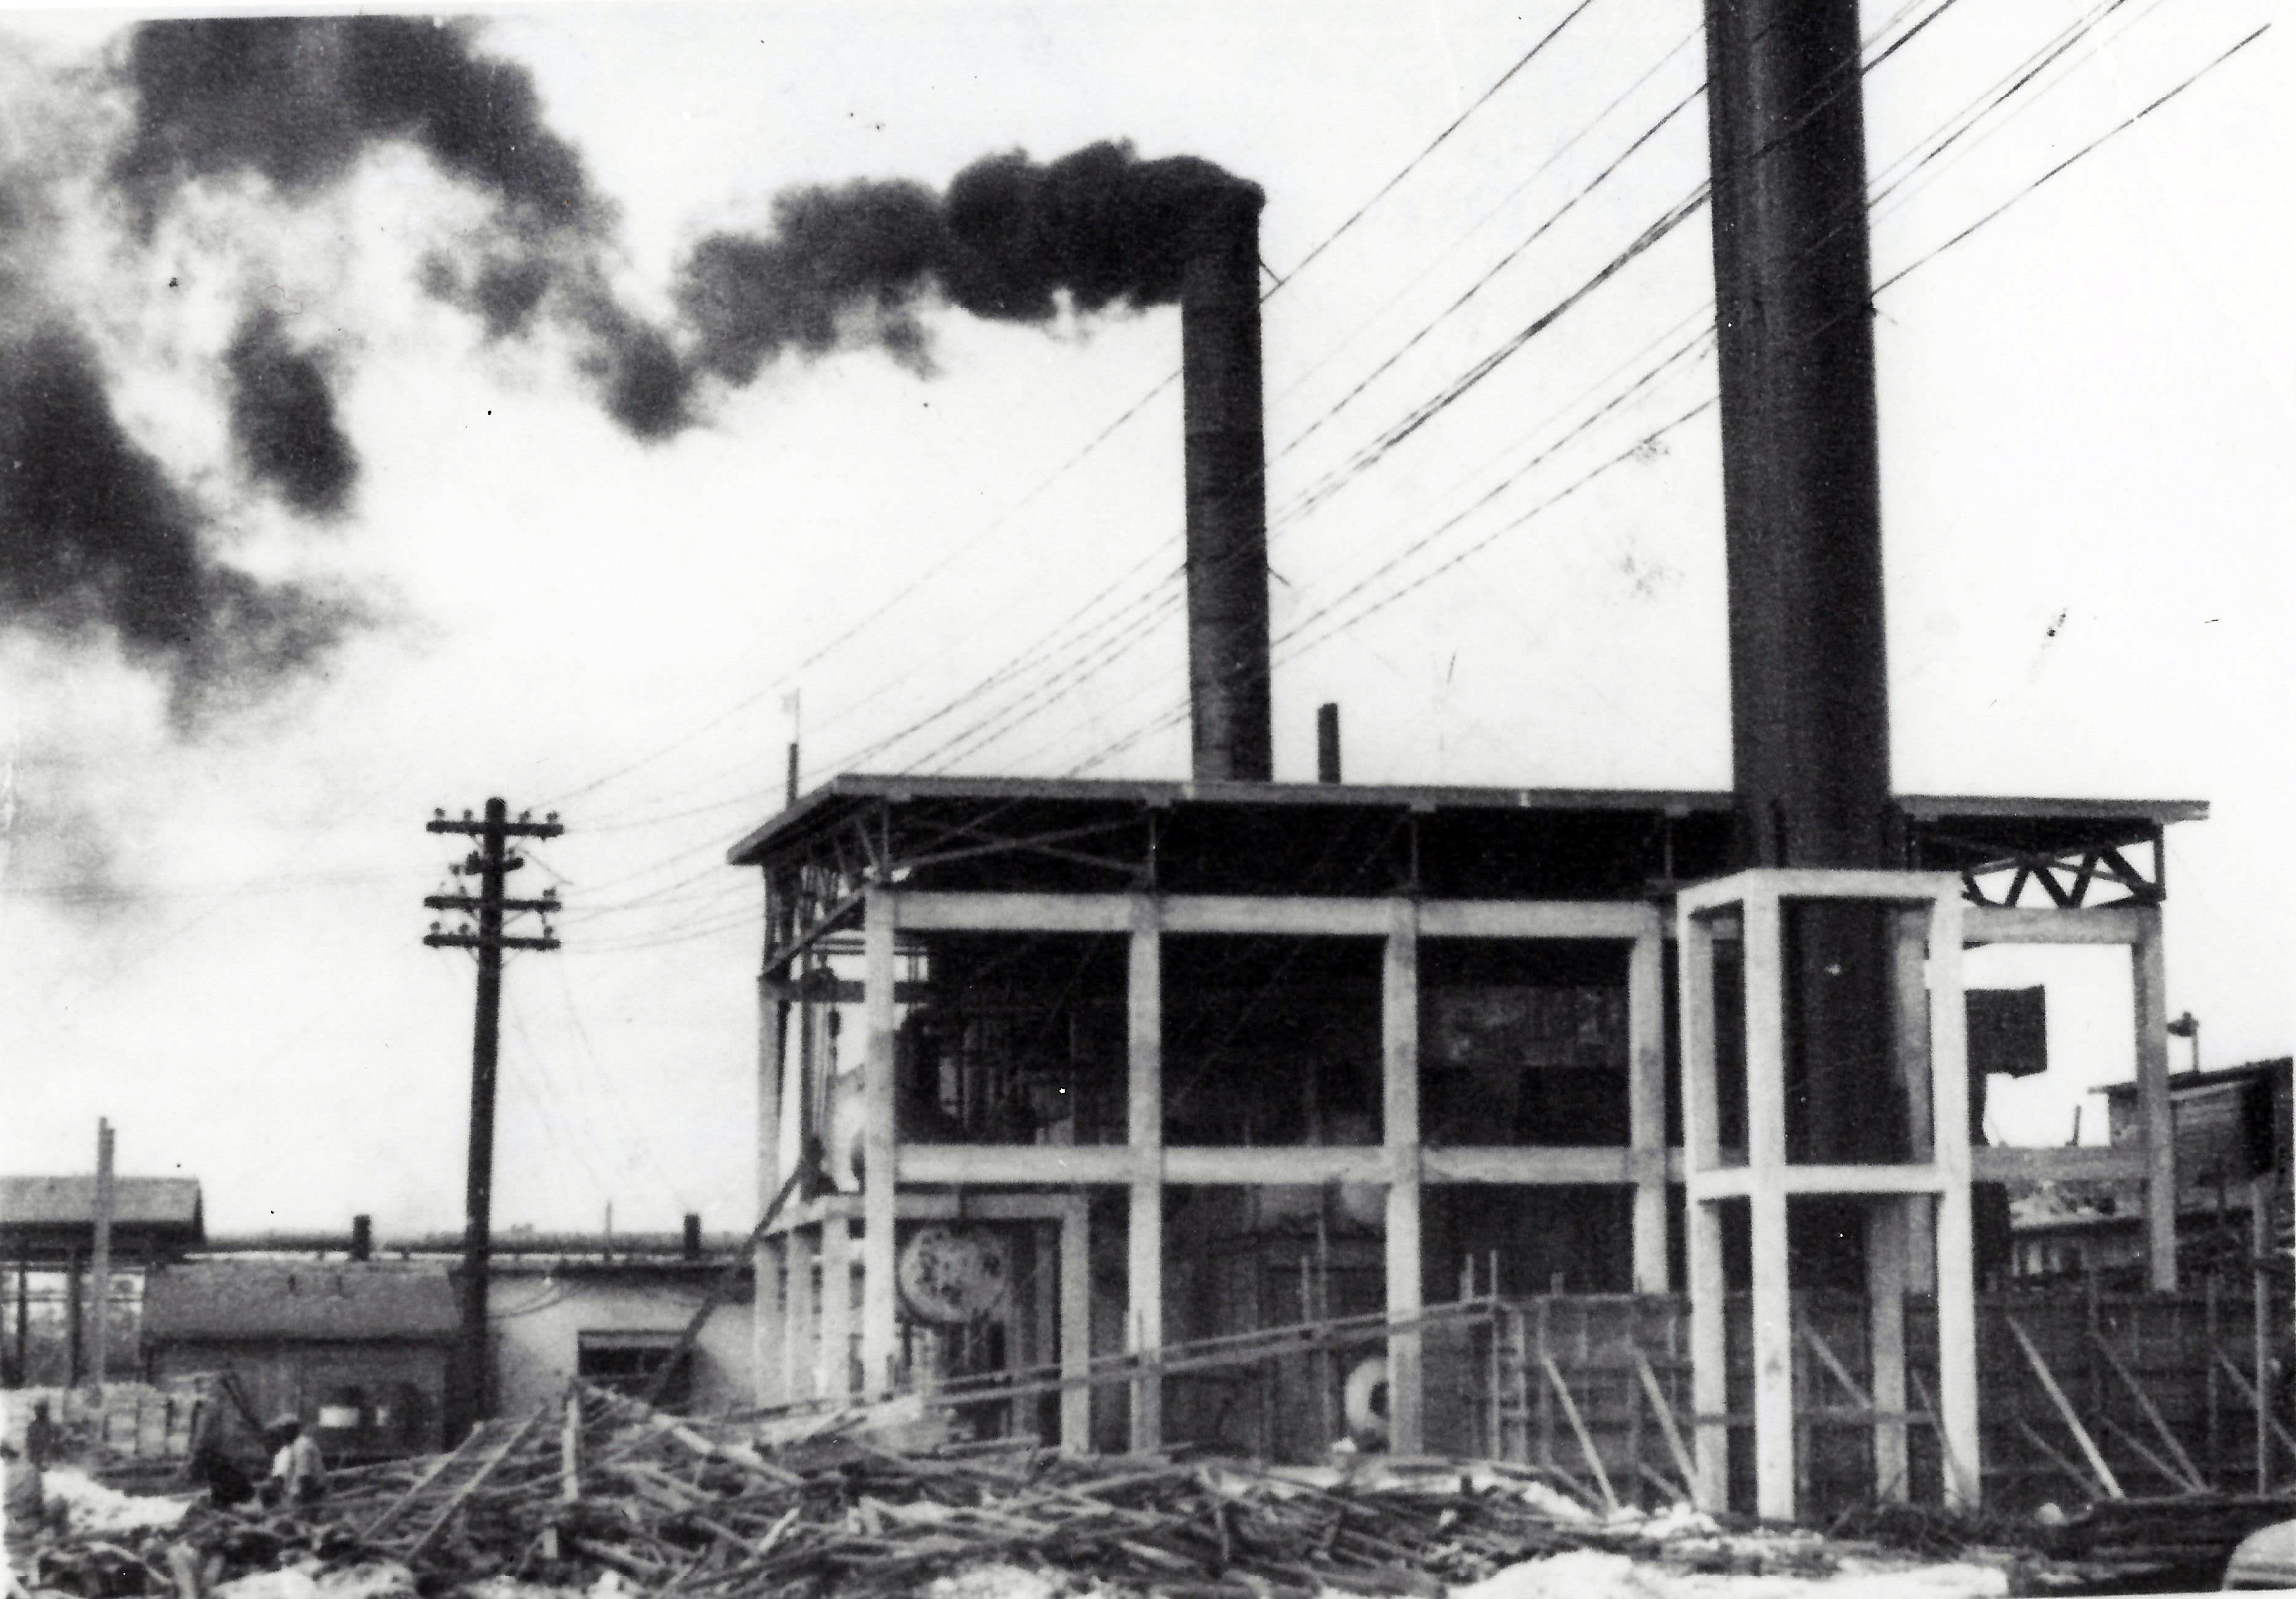 Pine Ridge power plant, 1950's